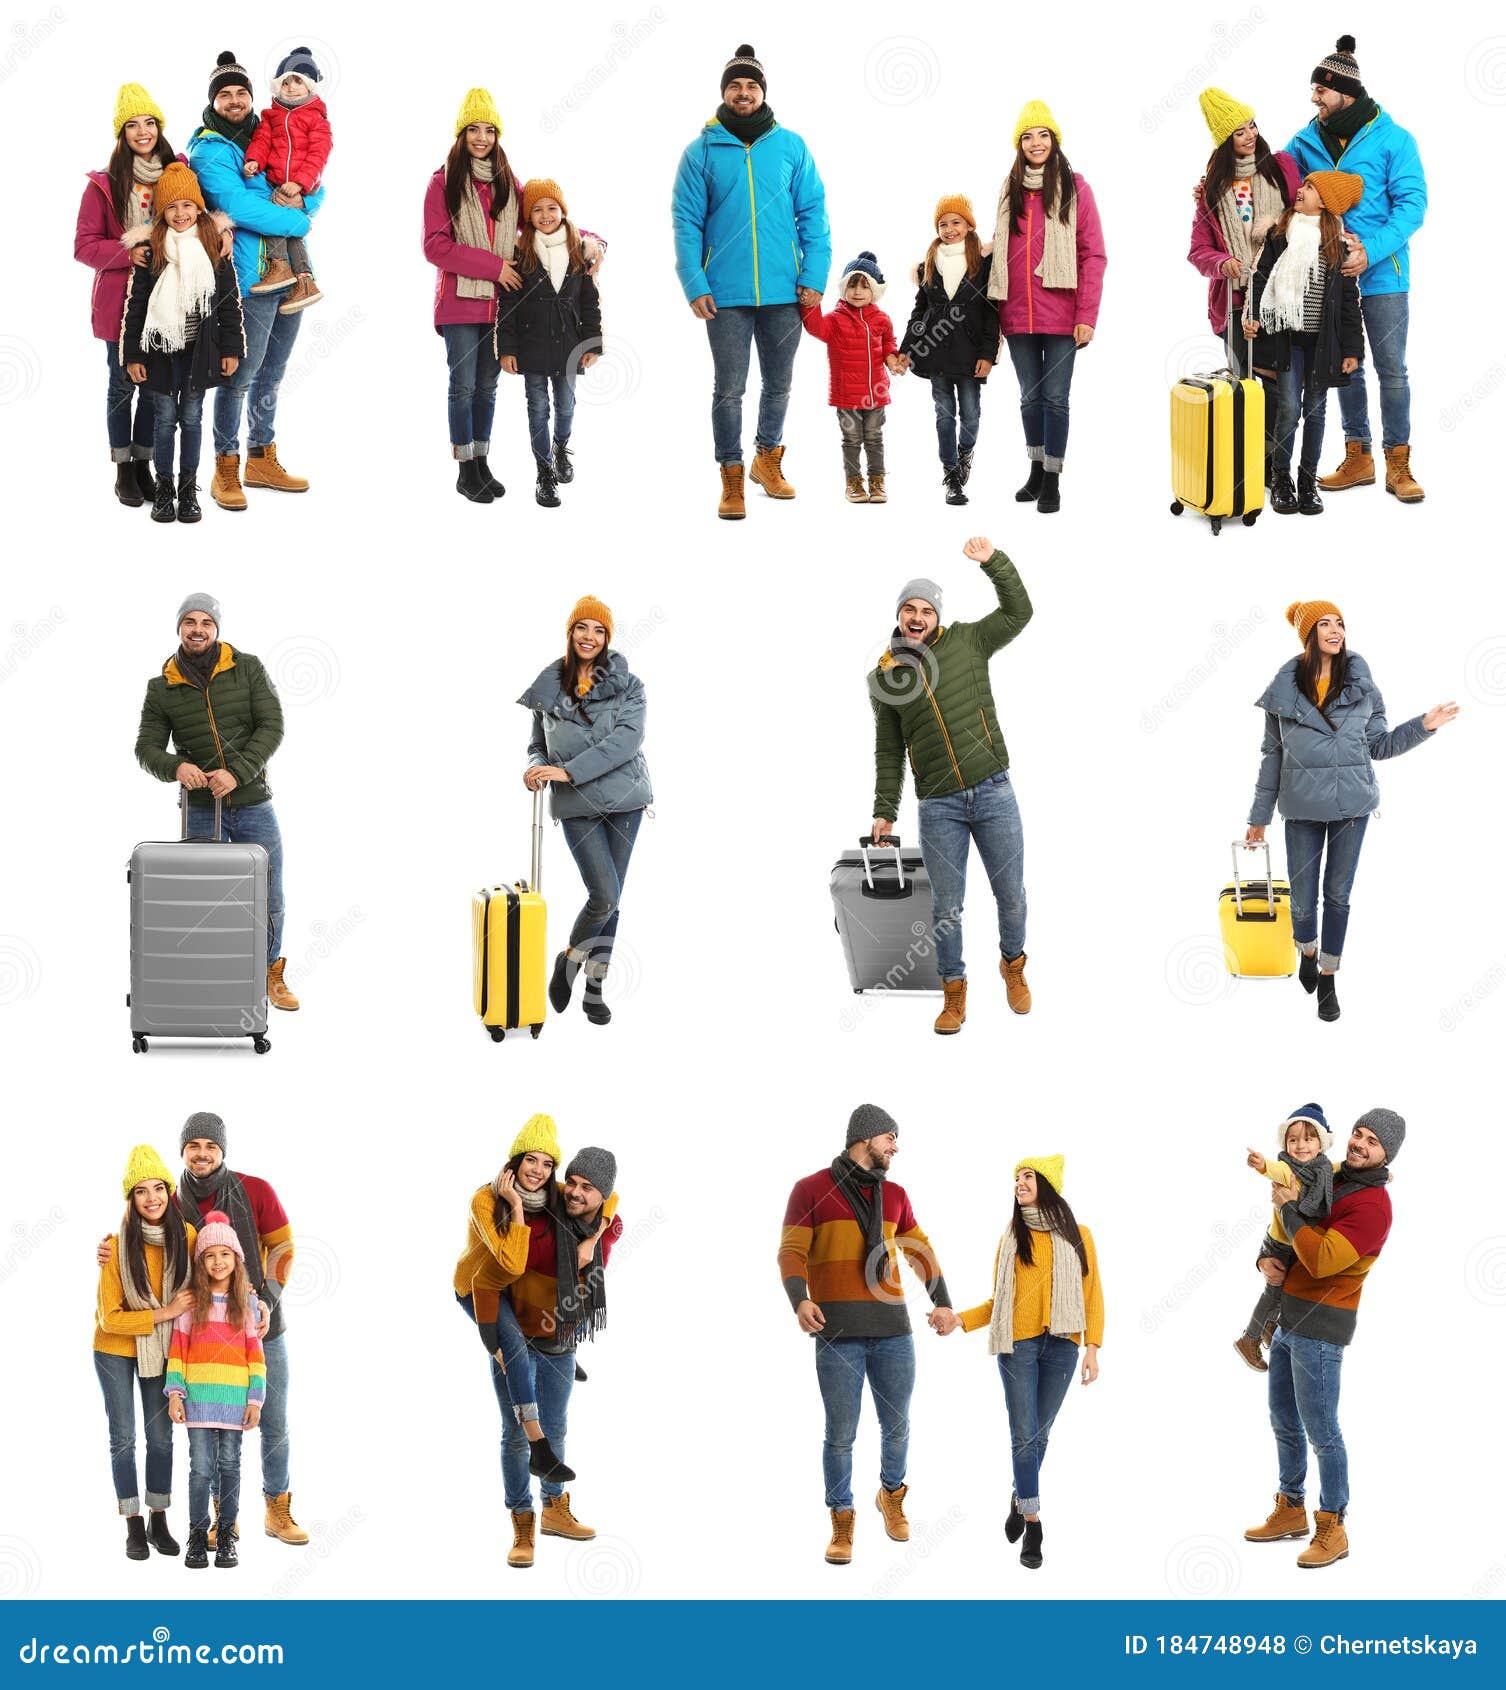 Collage Con Fotos De Personas Usando Ropa De Abrigo En Segundo Plano.  Vacaciones De Invierno Foto de archivo - Imagen de ropas, pares: 184748948